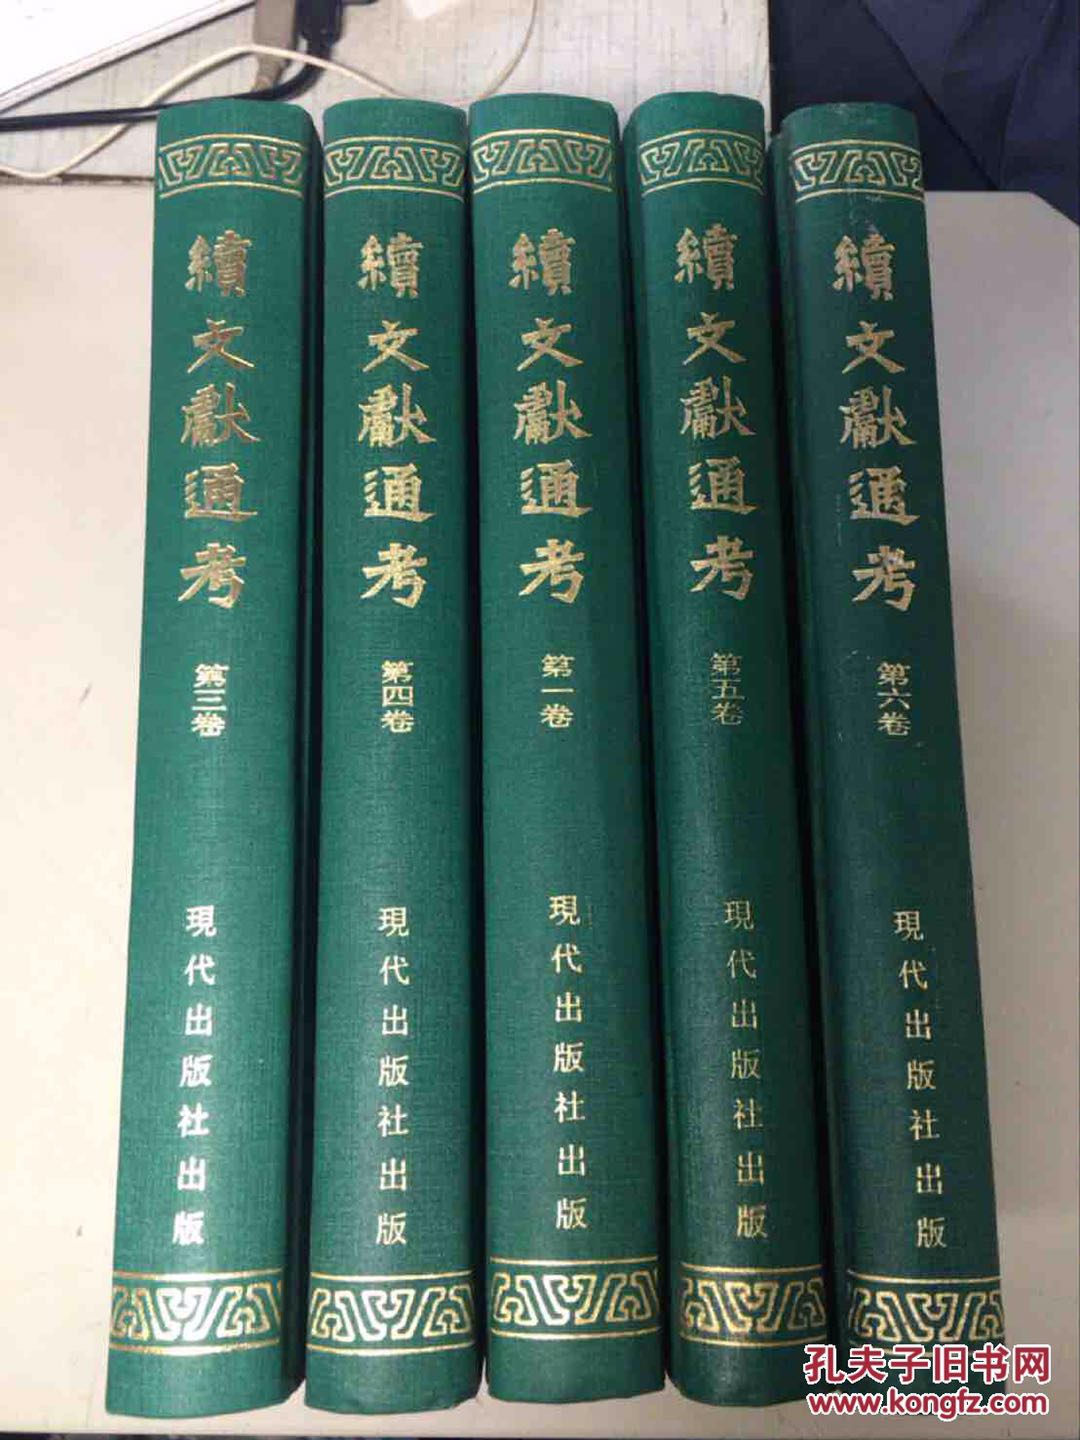 北京 永定路 旧书 二手书 闲置书 废纸收购旧书二手书